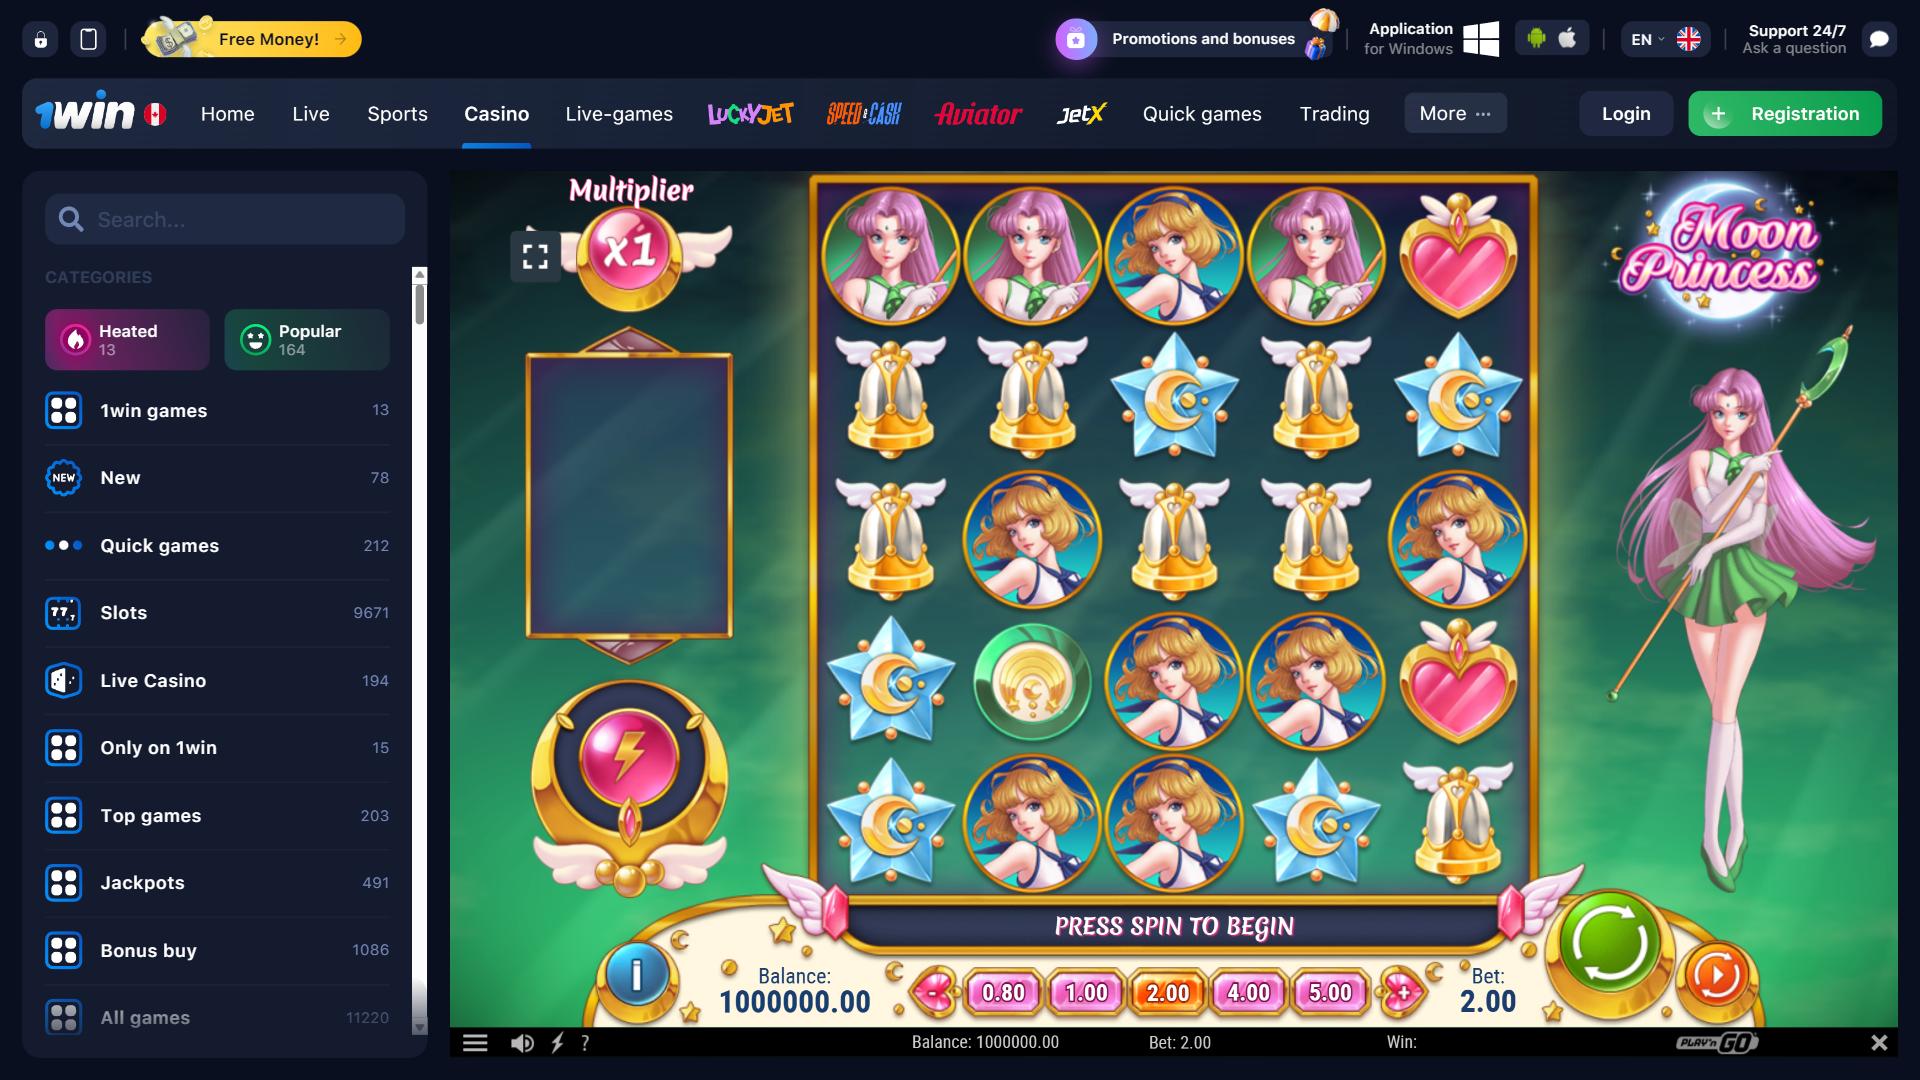 Moon Princess Demo at 1win Casino